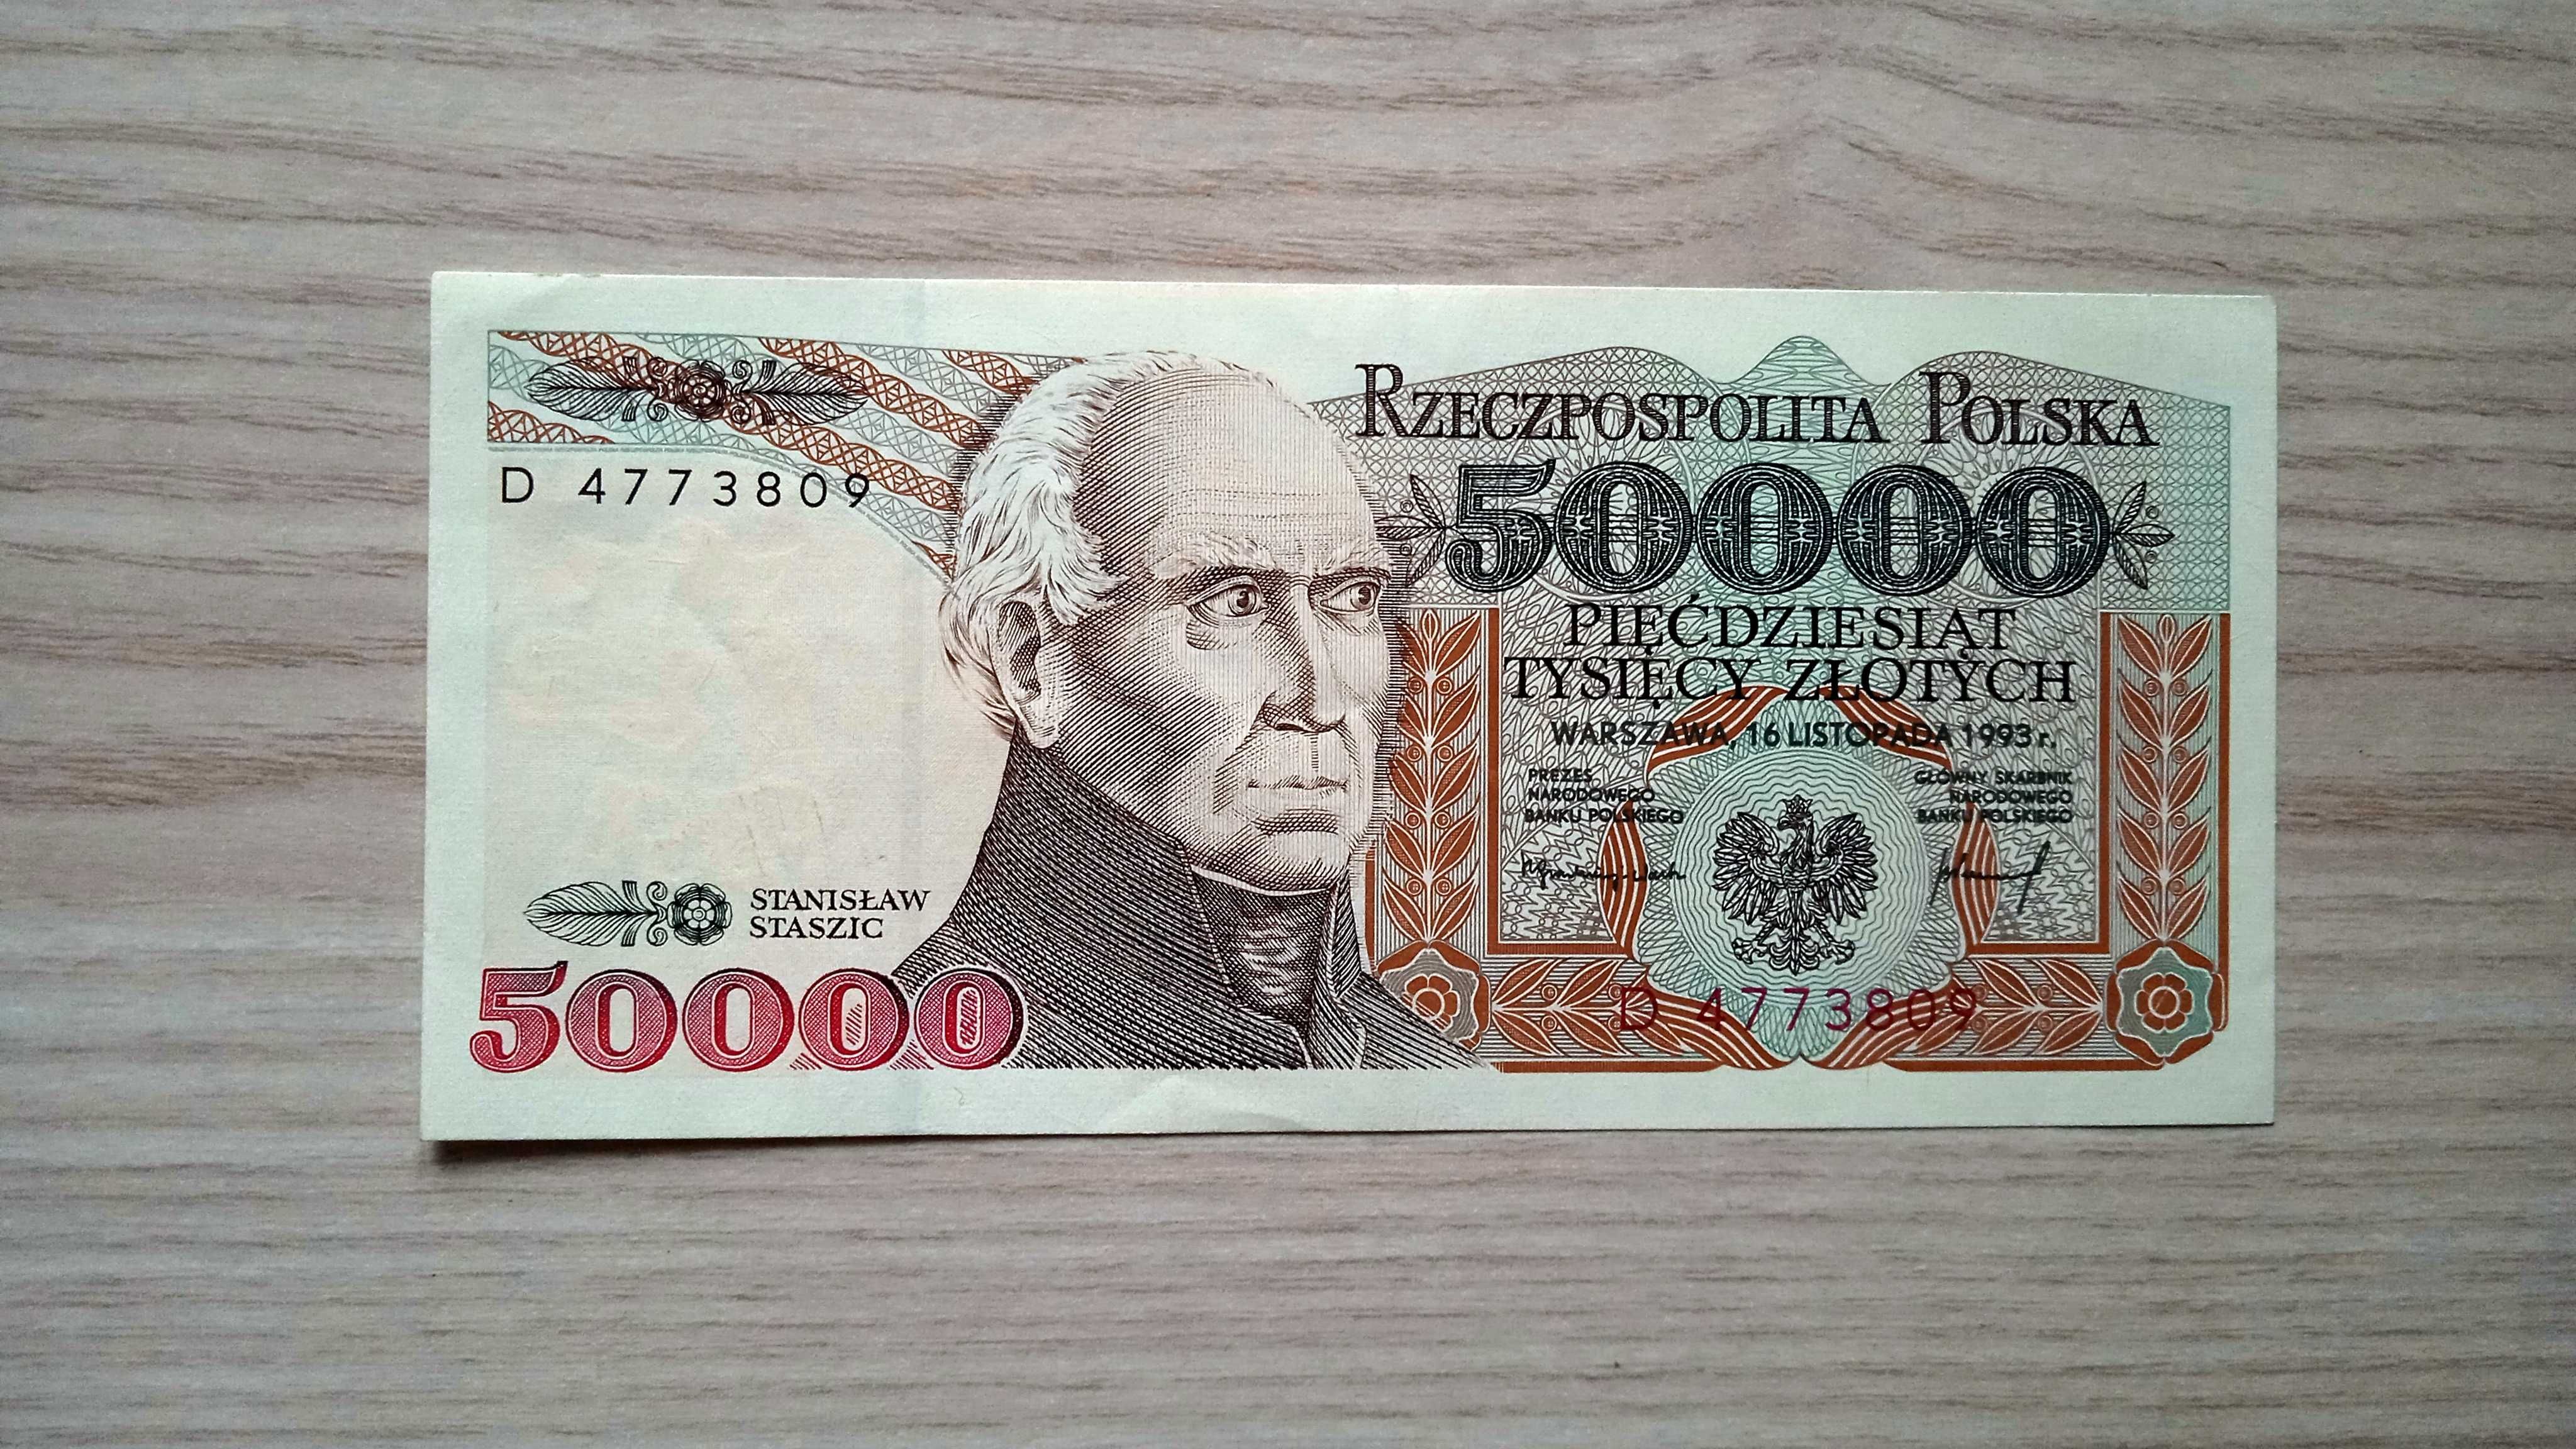 Banknot PRL  50000 zł  D  1993  stan UNC-